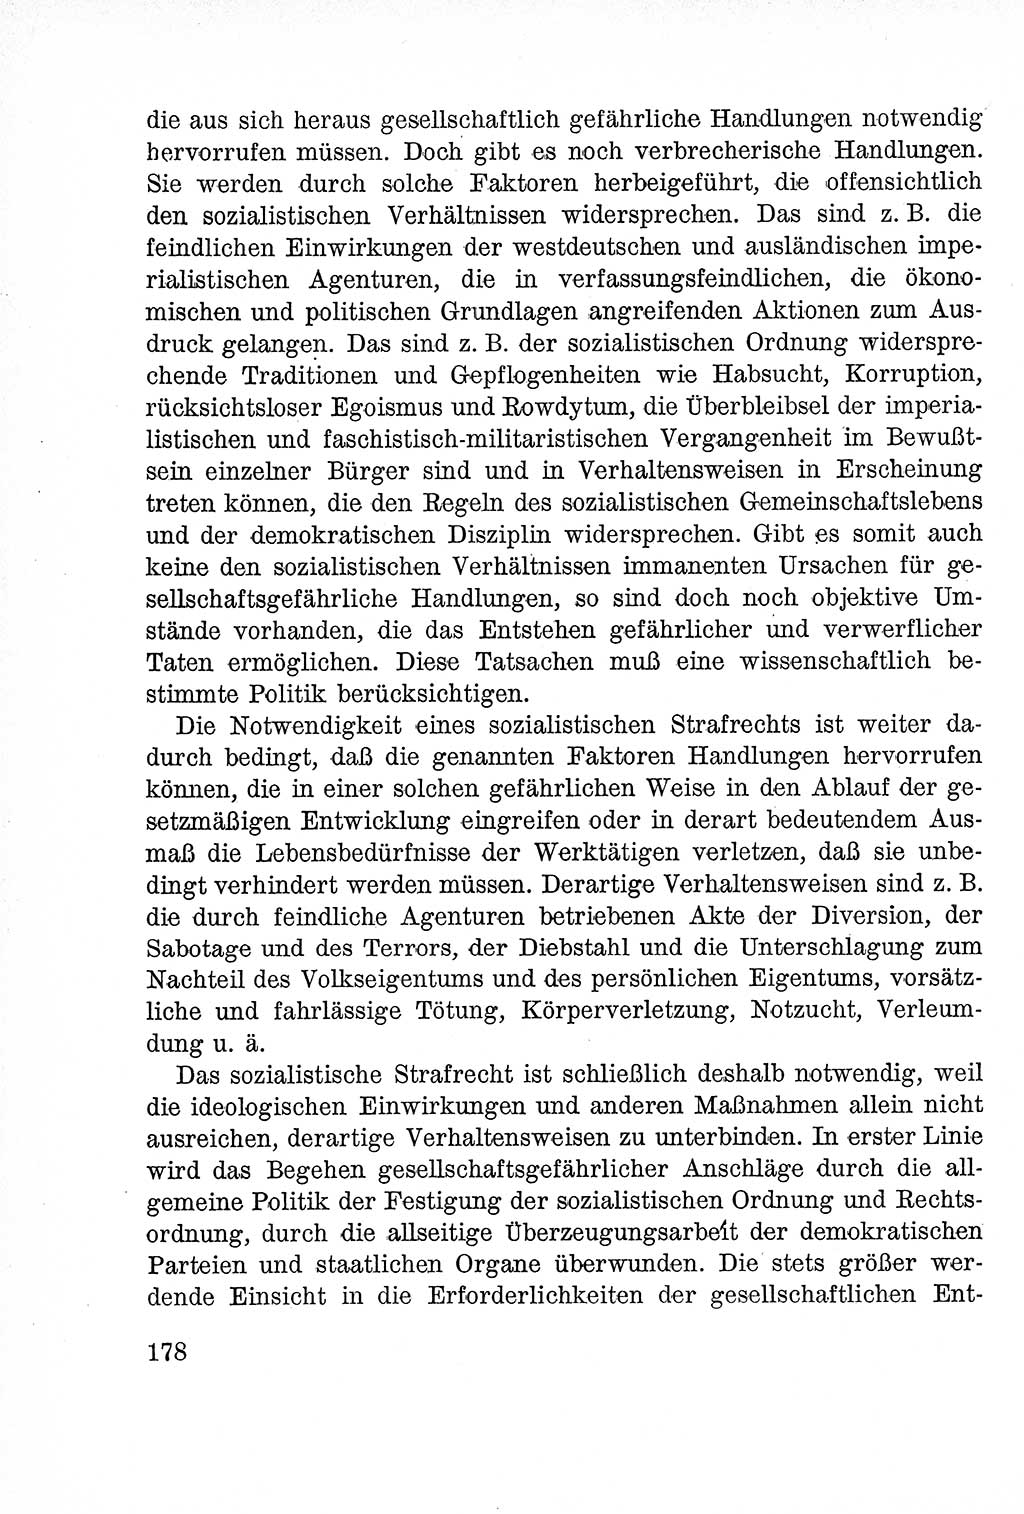 Lehrbuch des Strafrechts der Deutschen Demokratischen Republik (DDR), Allgemeiner Teil 1957, Seite 178 (Lb. Strafr. DDR AT 1957, S. 178)